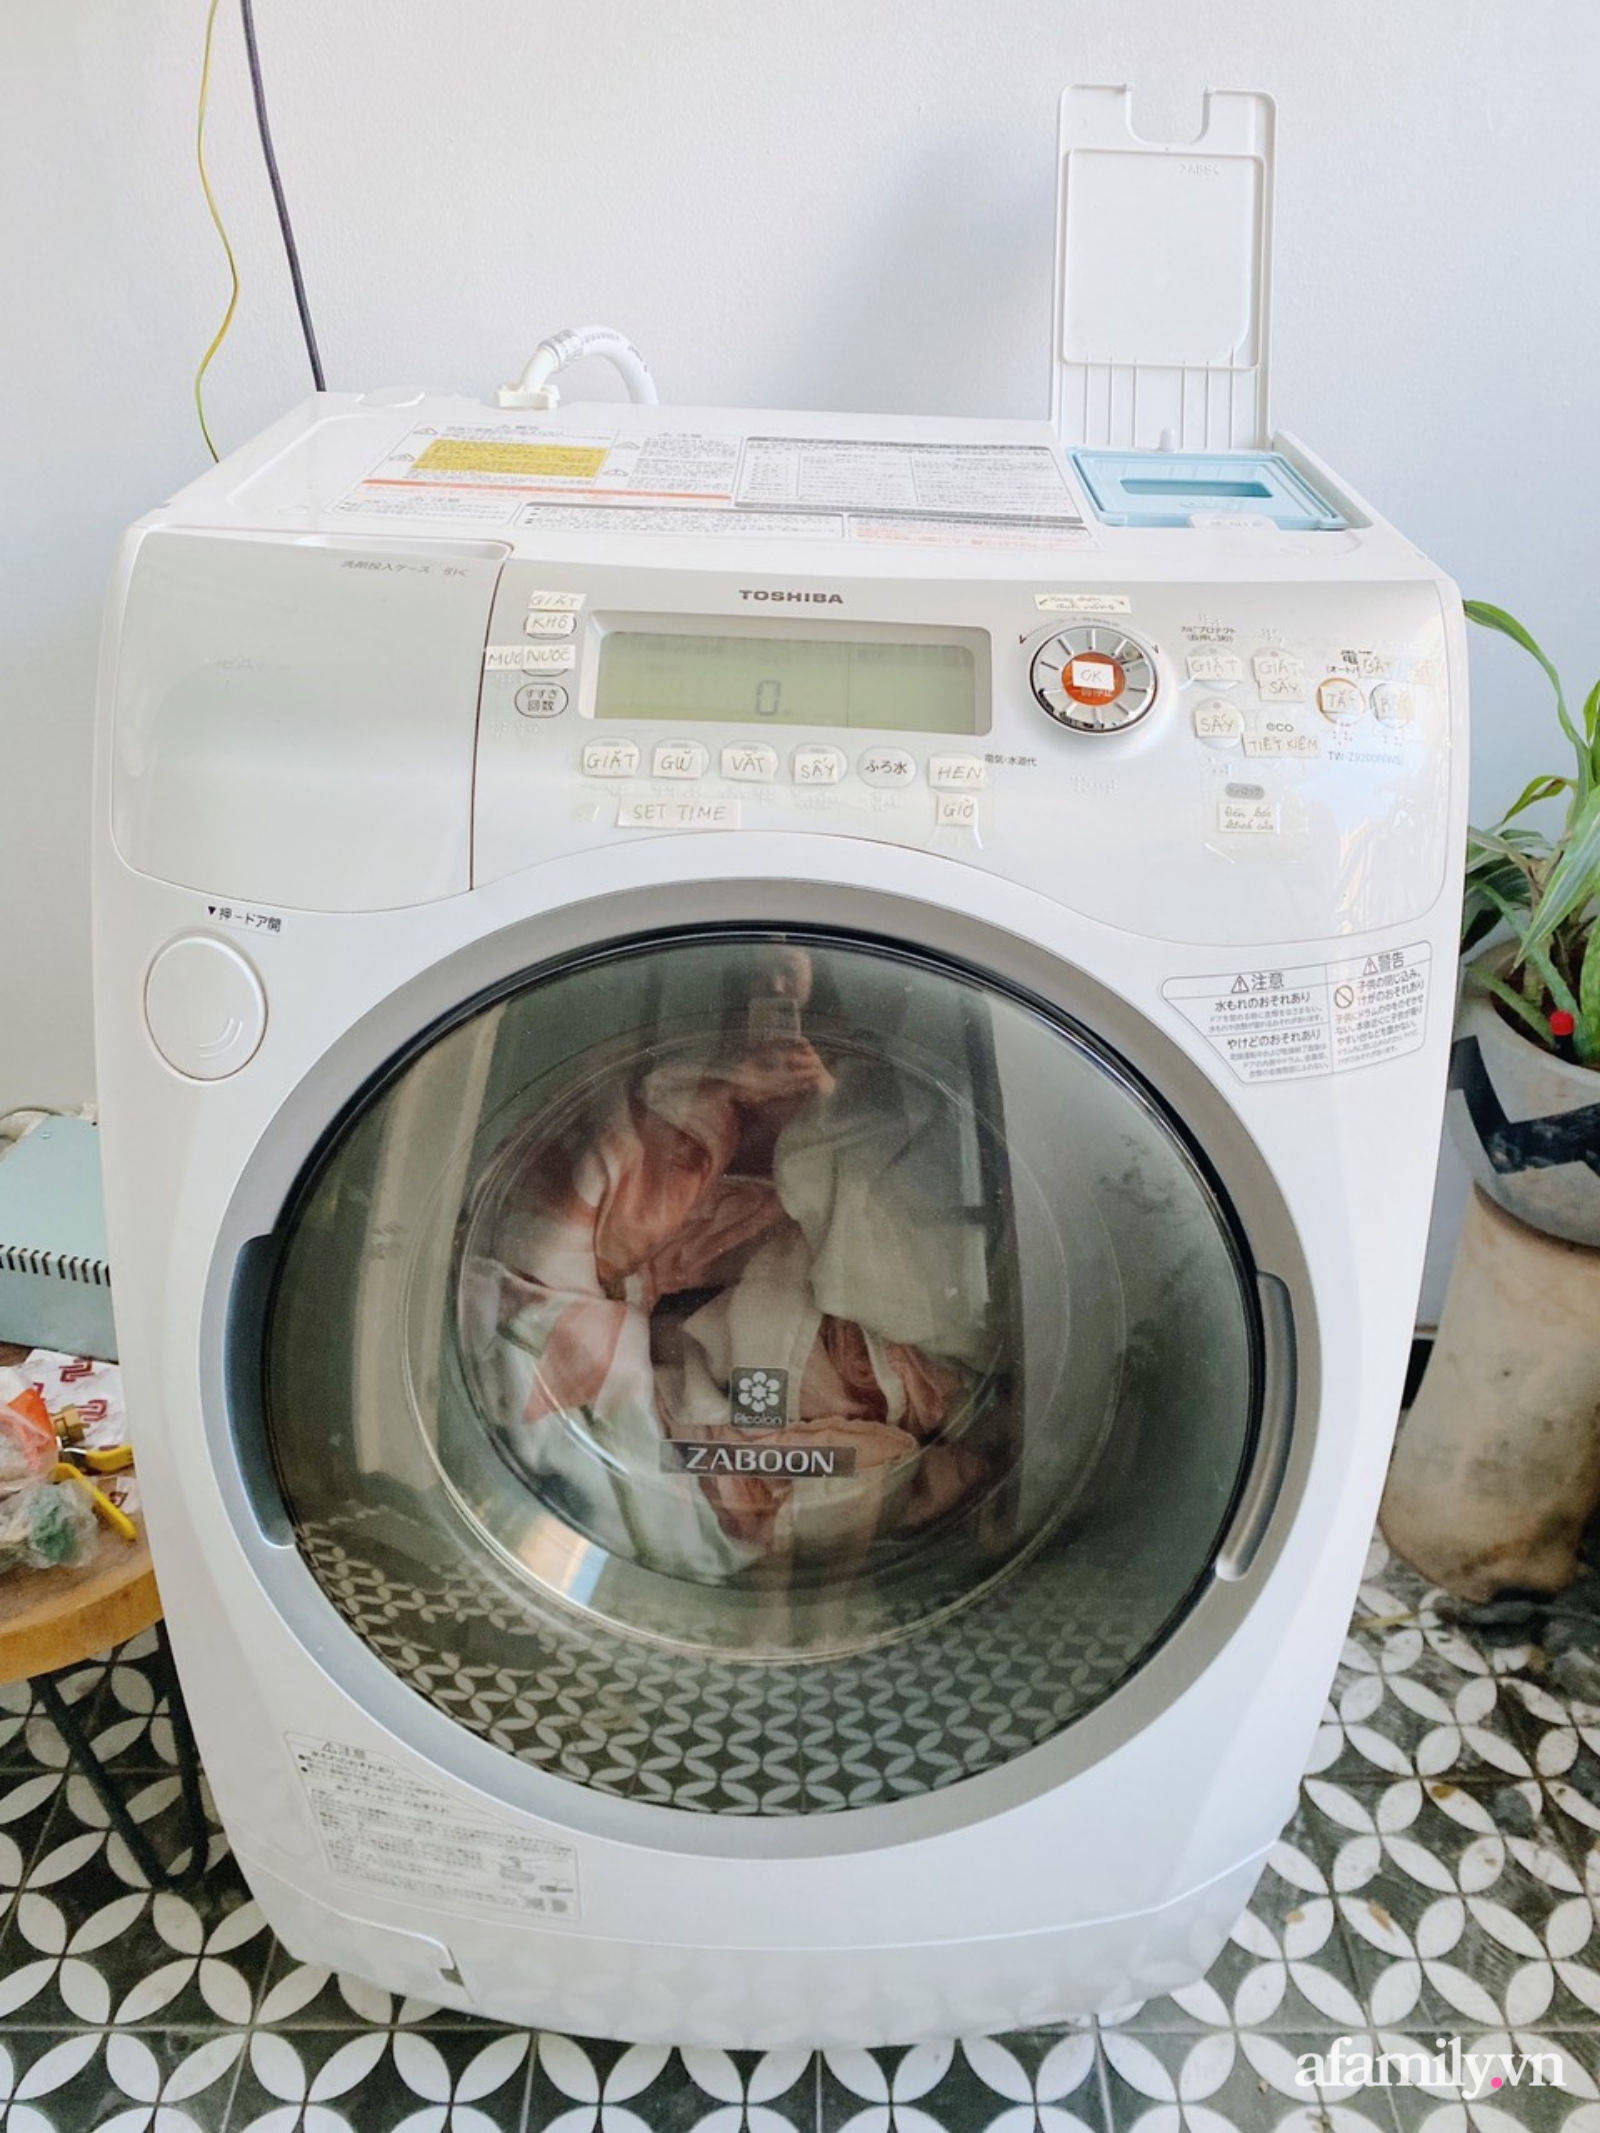 Mua máy giặt sấy hàng Nhật nội địa cũ, mẹ đảm ở Hà Nội bất ngờ vì chất lượng nhưng vẫn hoa mắt vì nút bấm toàn tiếng nước ngoài - Ảnh 1.